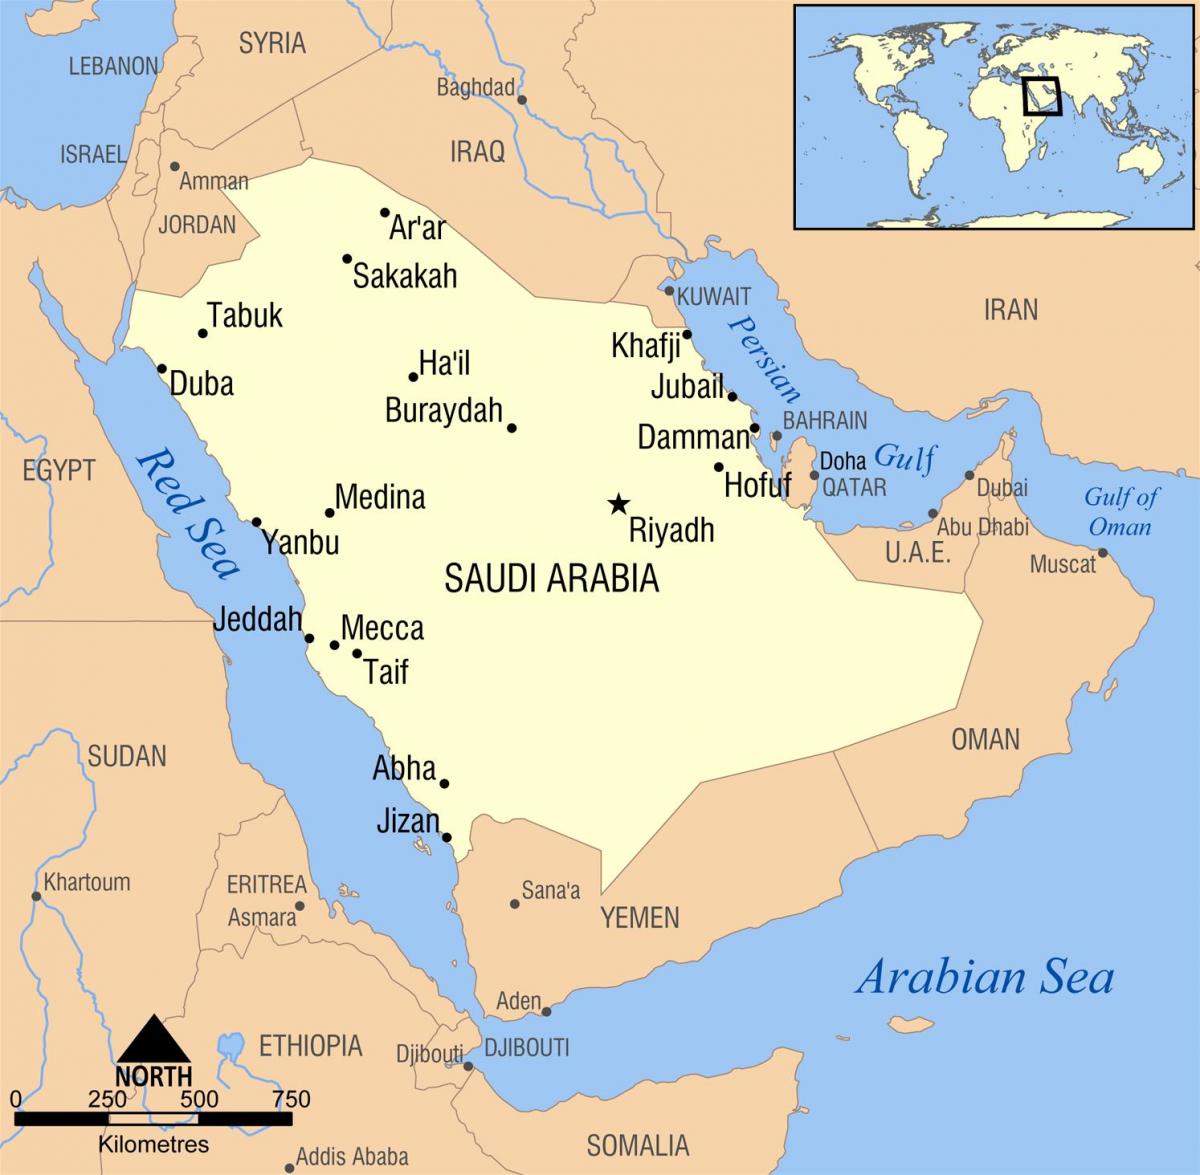 沙特阿拉伯王国利雅得地图